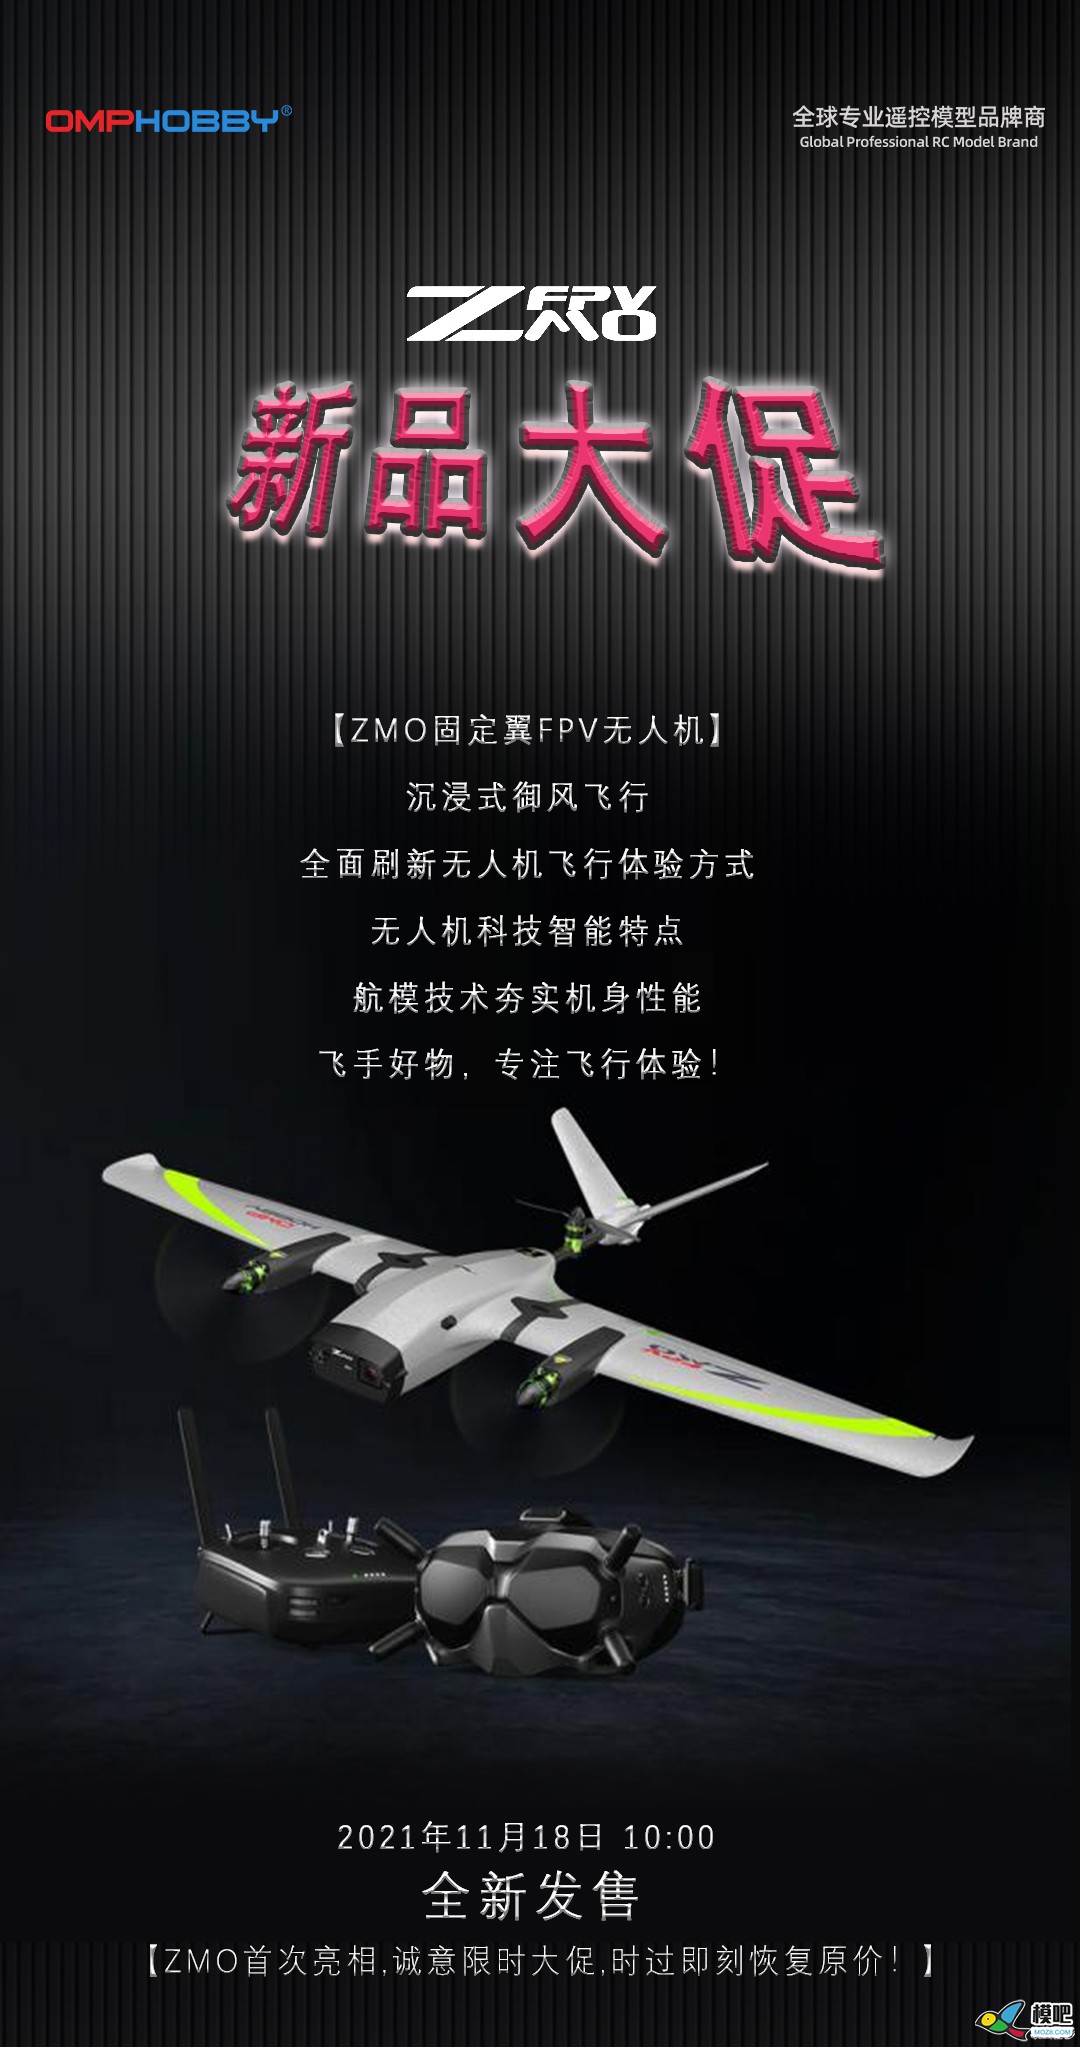 潮玩无人机-垂起固定翼FPV【ZMO】| 全新发售 无人机,航模,固定翼,飞手,飞行体验 作者:边锋领域 2658 